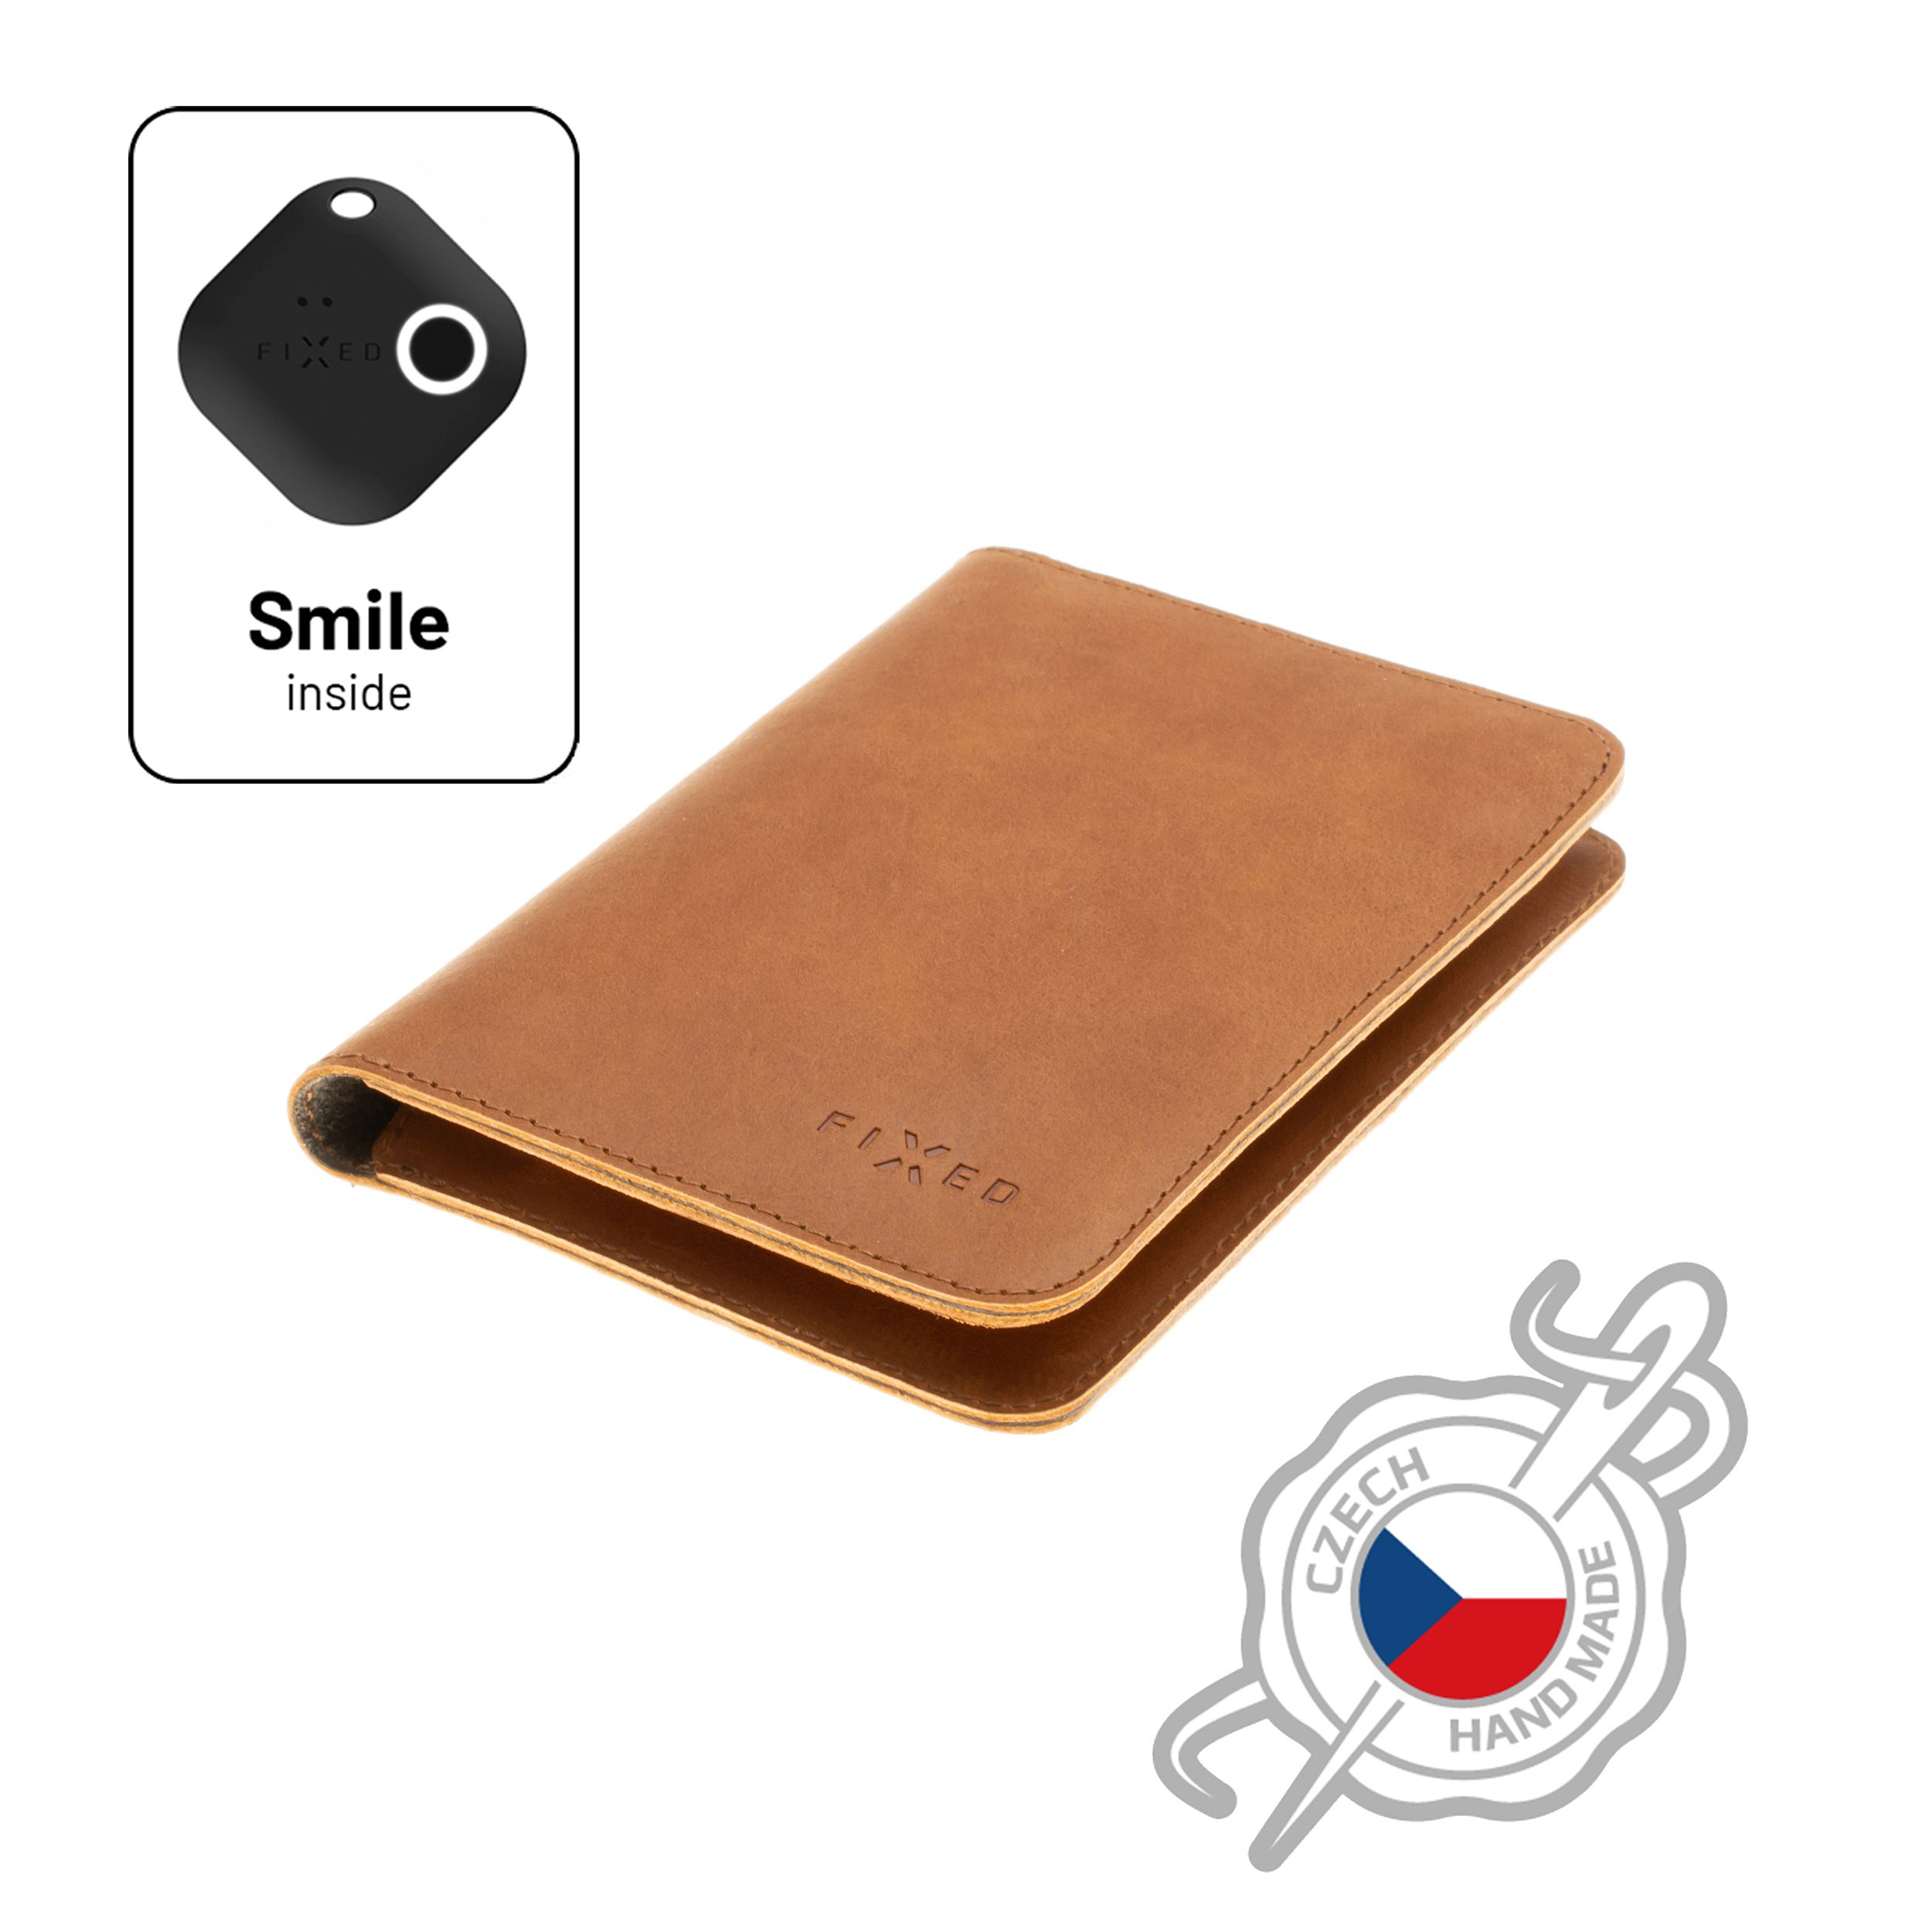 Kožená peněženka Smile Passport se smart trackerem Smile PRO, velikost cestovního pasu, hnědá